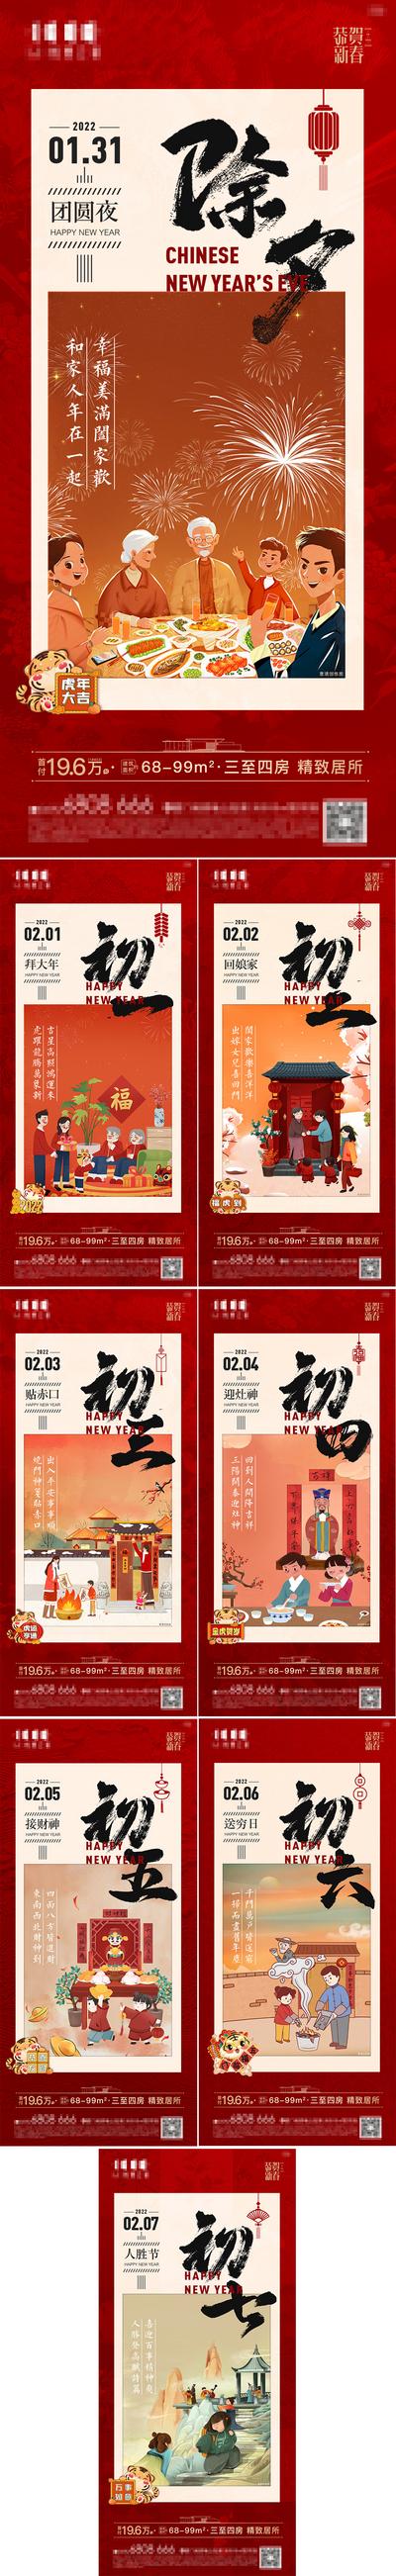 南门网 广告 海报 新年 春节 初一 大年初一 拜年 初七 民俗 年味 系列 插画 手绘